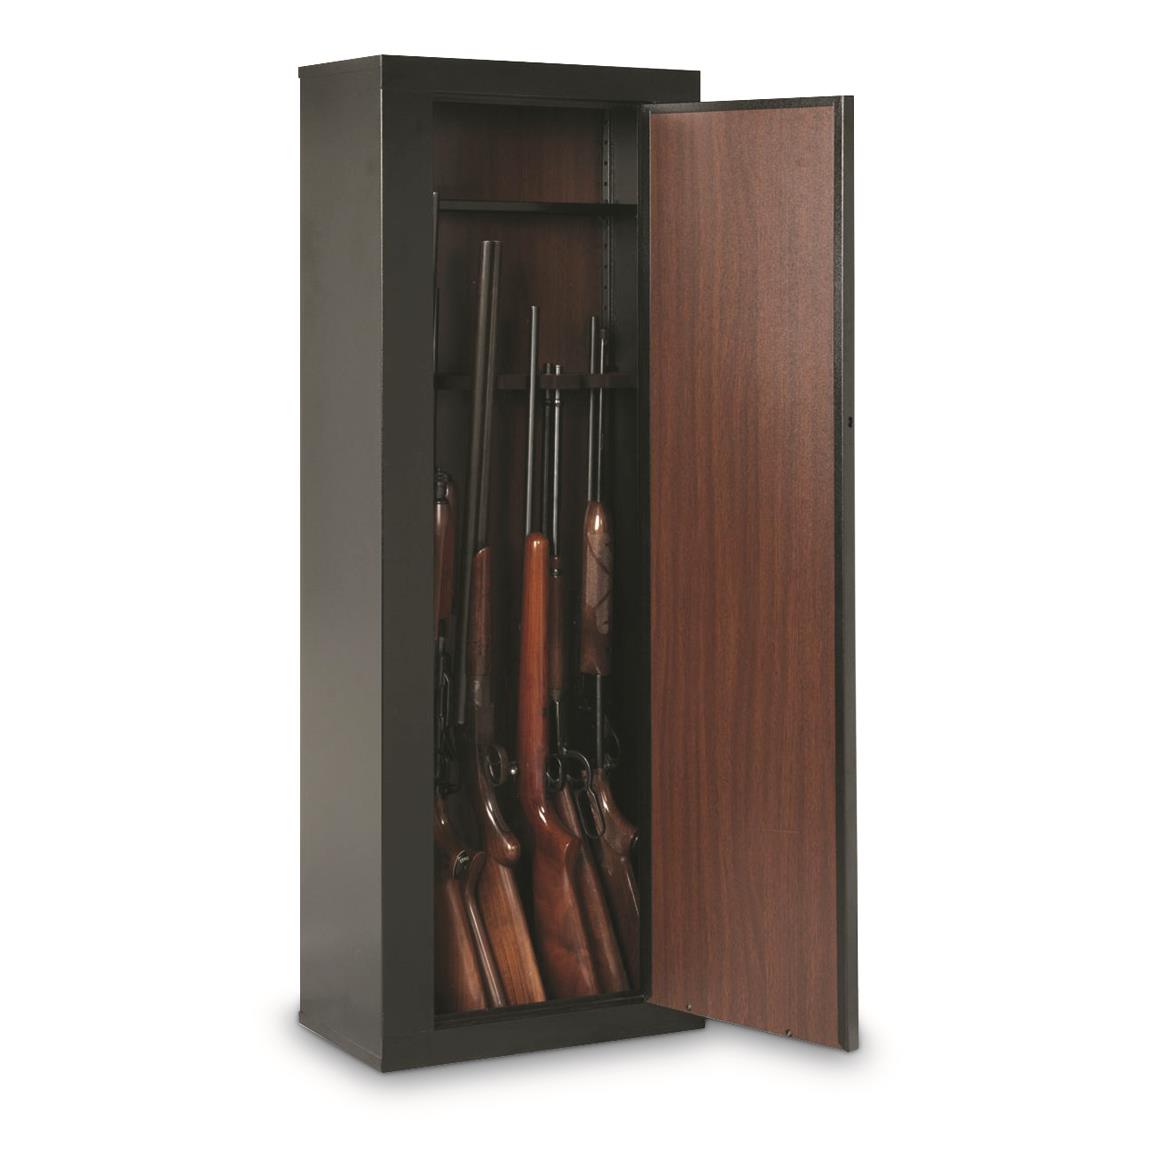 8 Gun Cabinet, American Furniture Classics - 654914, Gun Cabinets